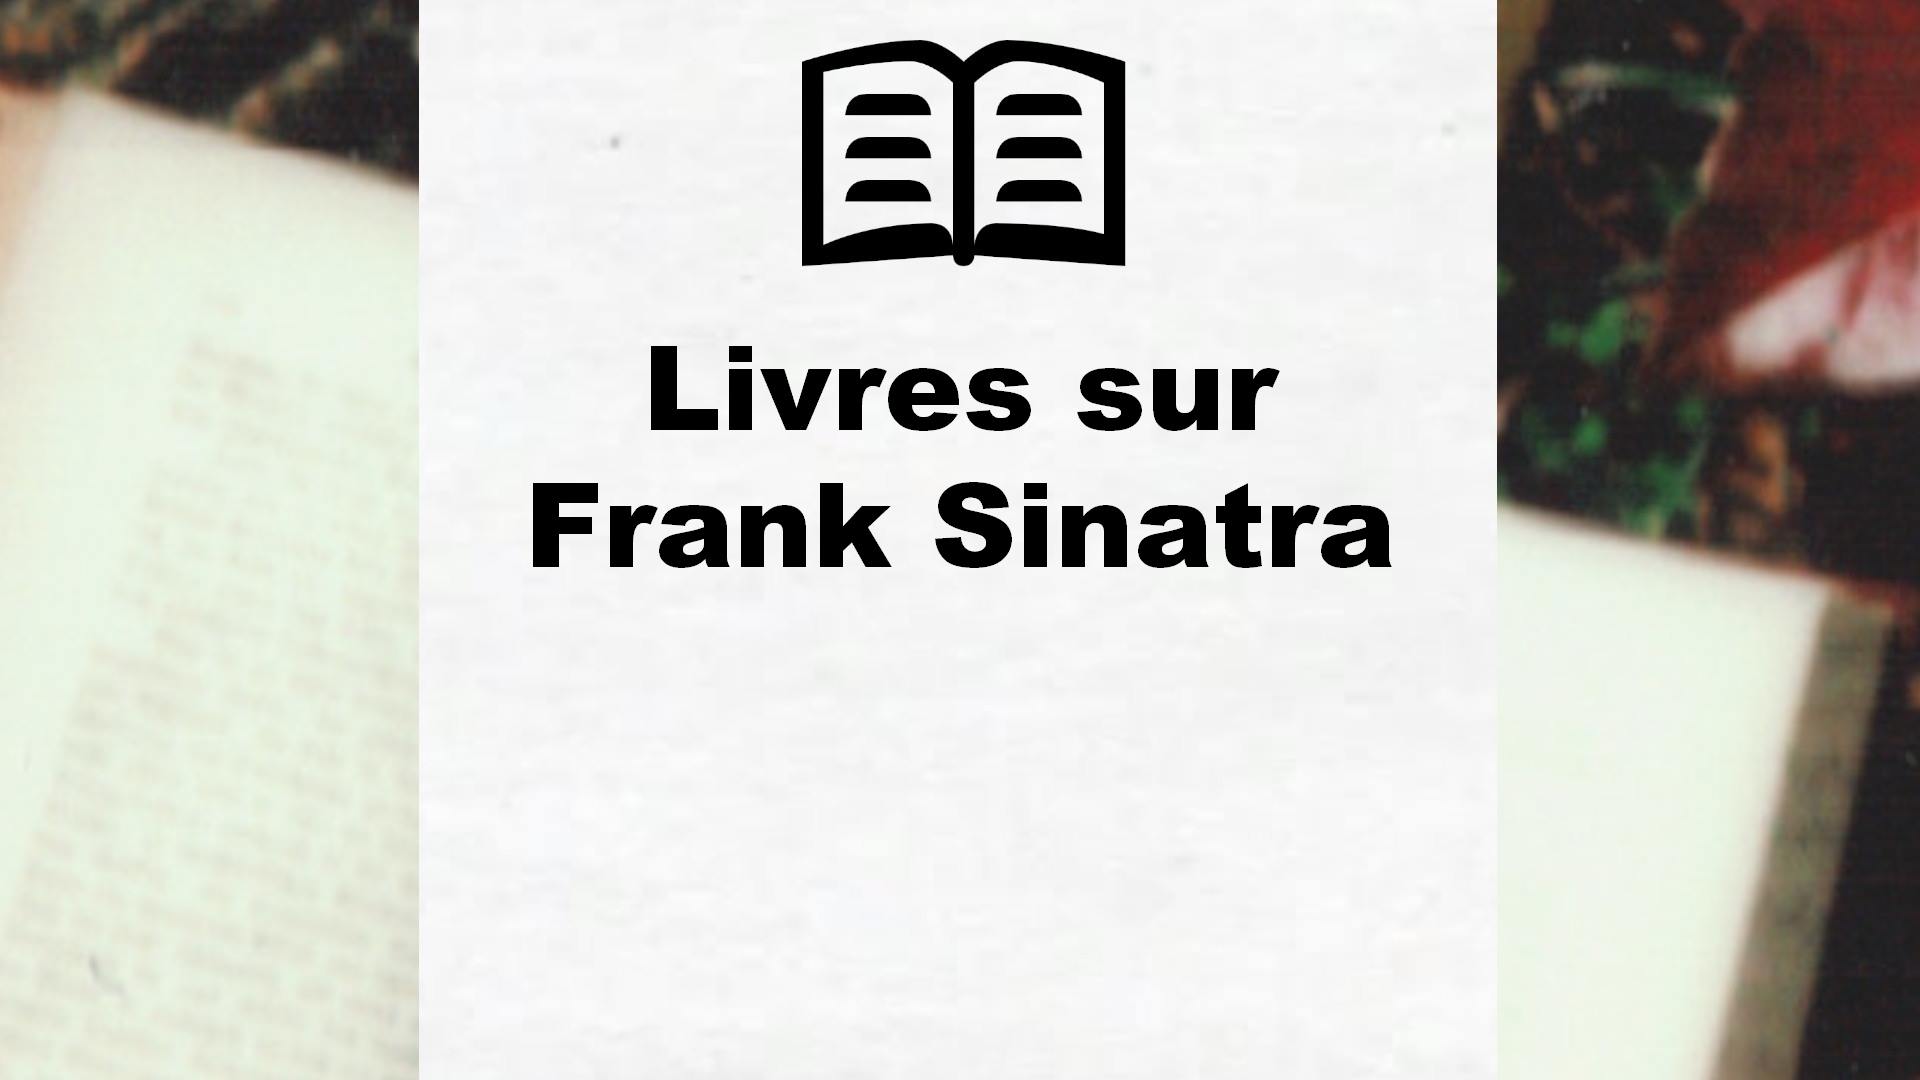 Livres sur Frank Sinatra